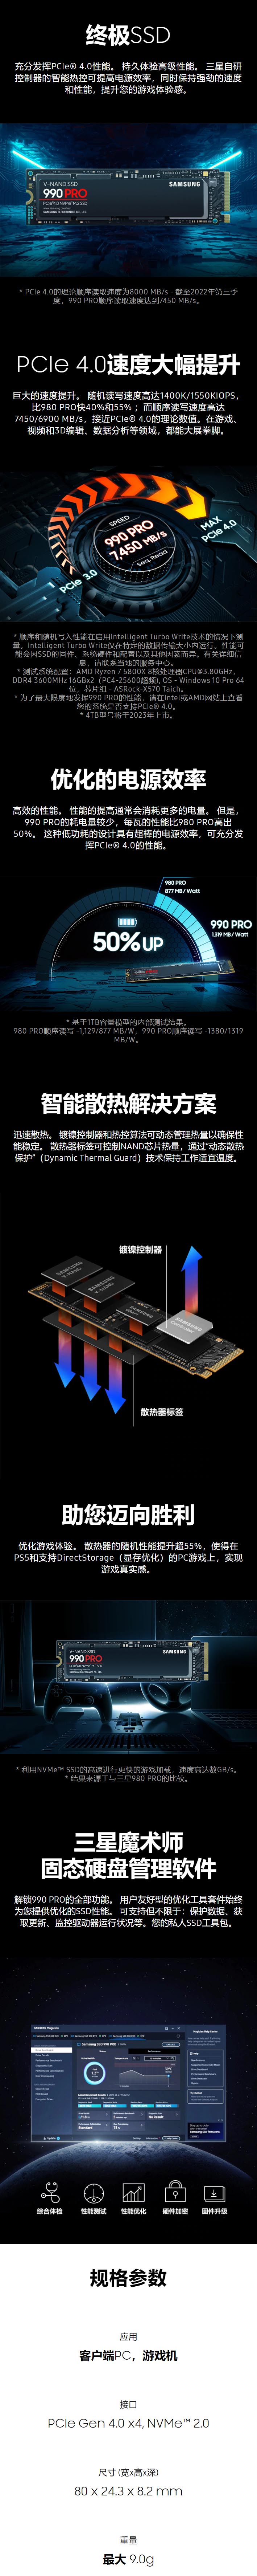 990 PRO PCIe 4.0 NVMe M.2 固态硬盘 _ 三星电子 中国